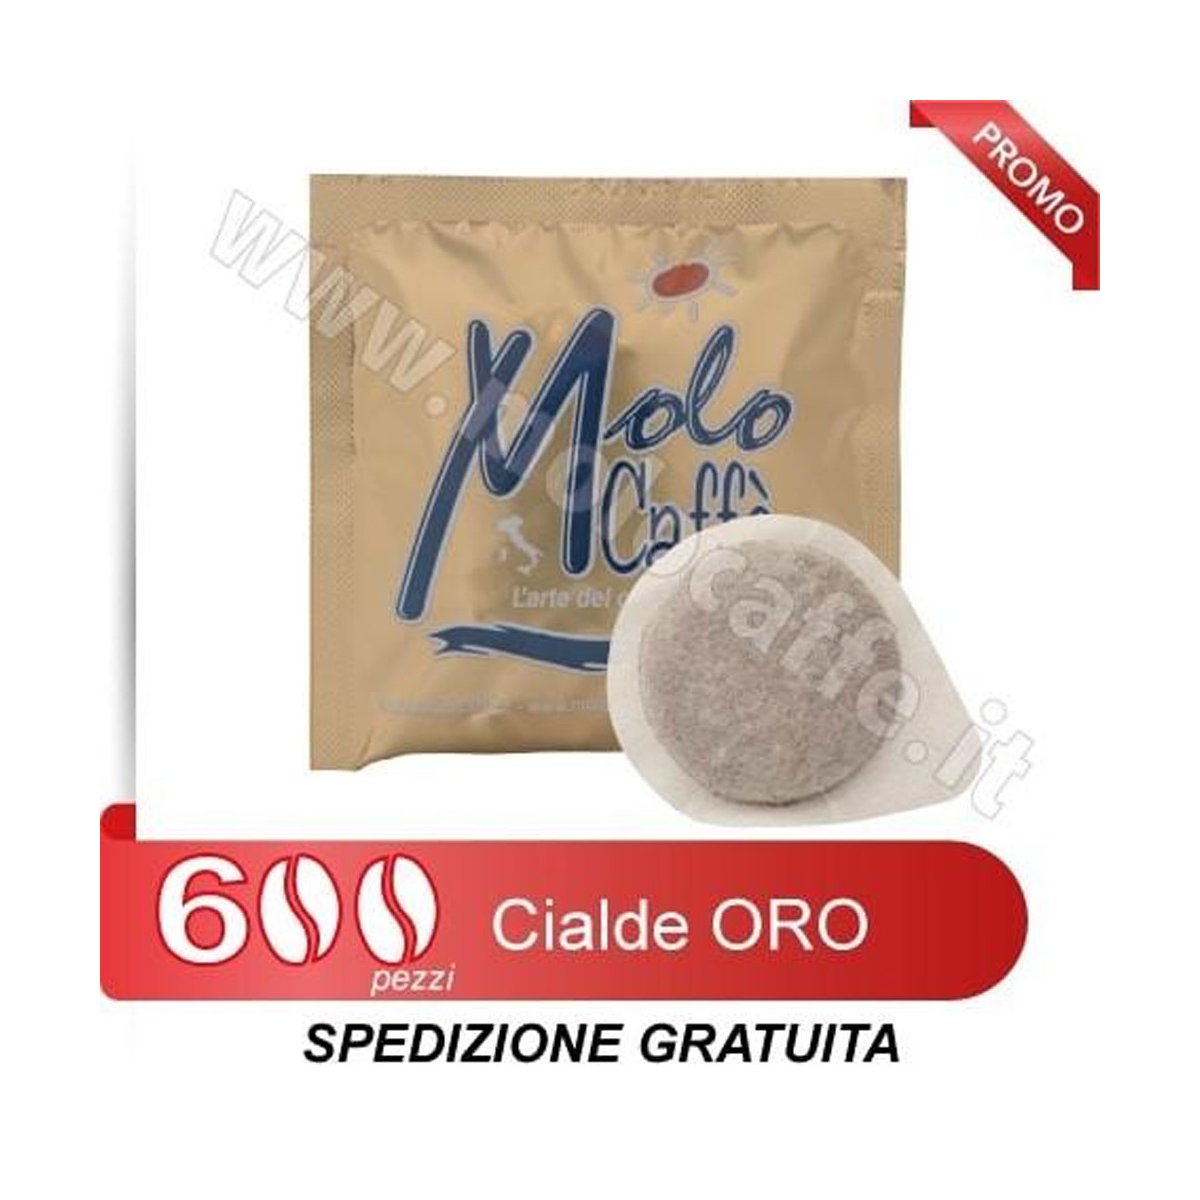 600 Cialde ORO Molo Caffè - PROMO SPEDIZIONE GRATUITA